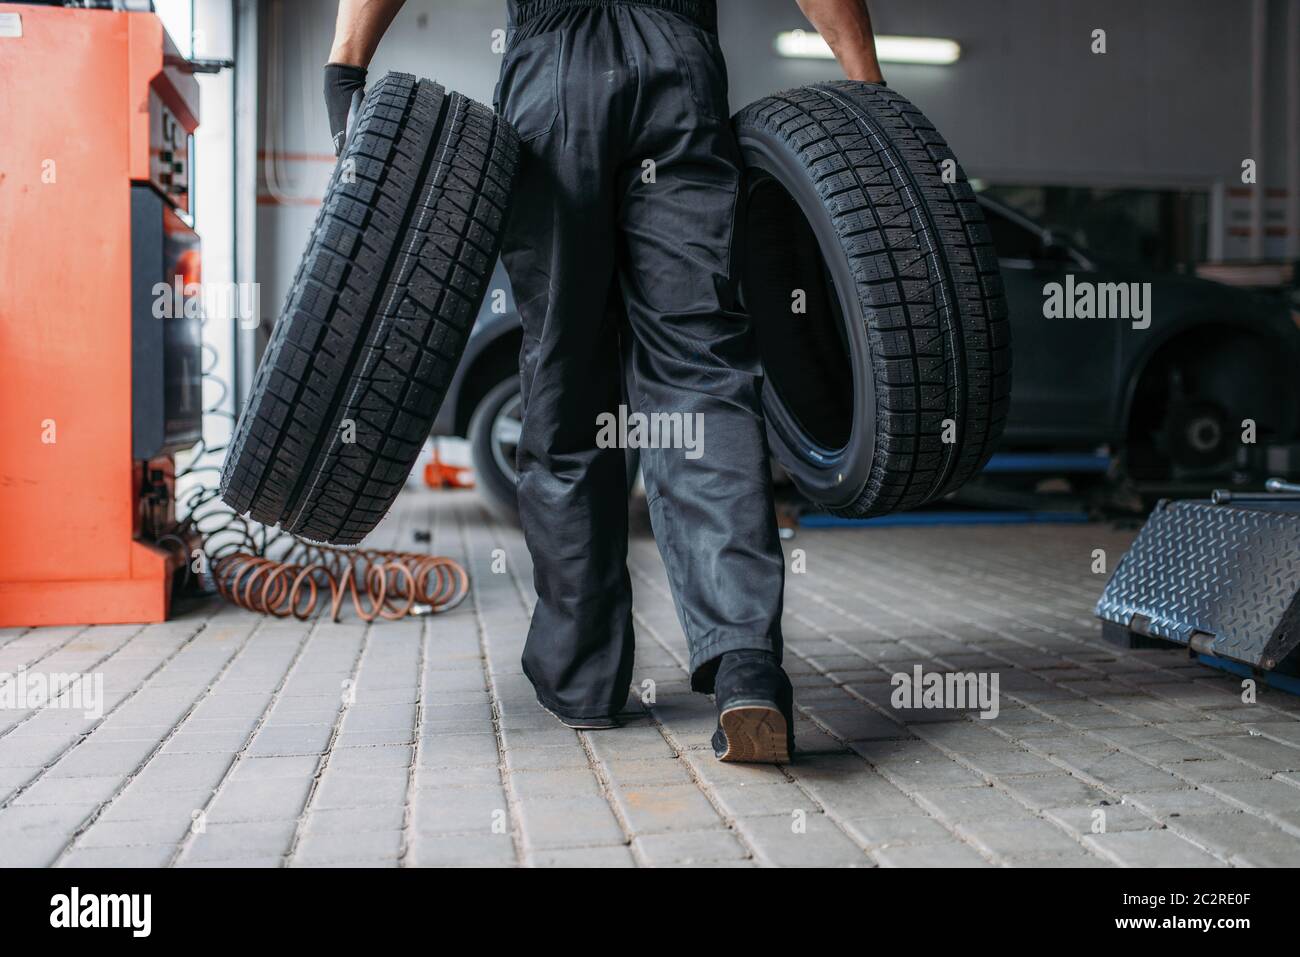 Auto Mechaniker hält zwei neue Reifen, Reparatur-Service. Arbeiter  repariert Autoreifen in der Garage, professionelle Kfz-Inspektion in der  Werkstatt Stockfotografie - Alamy